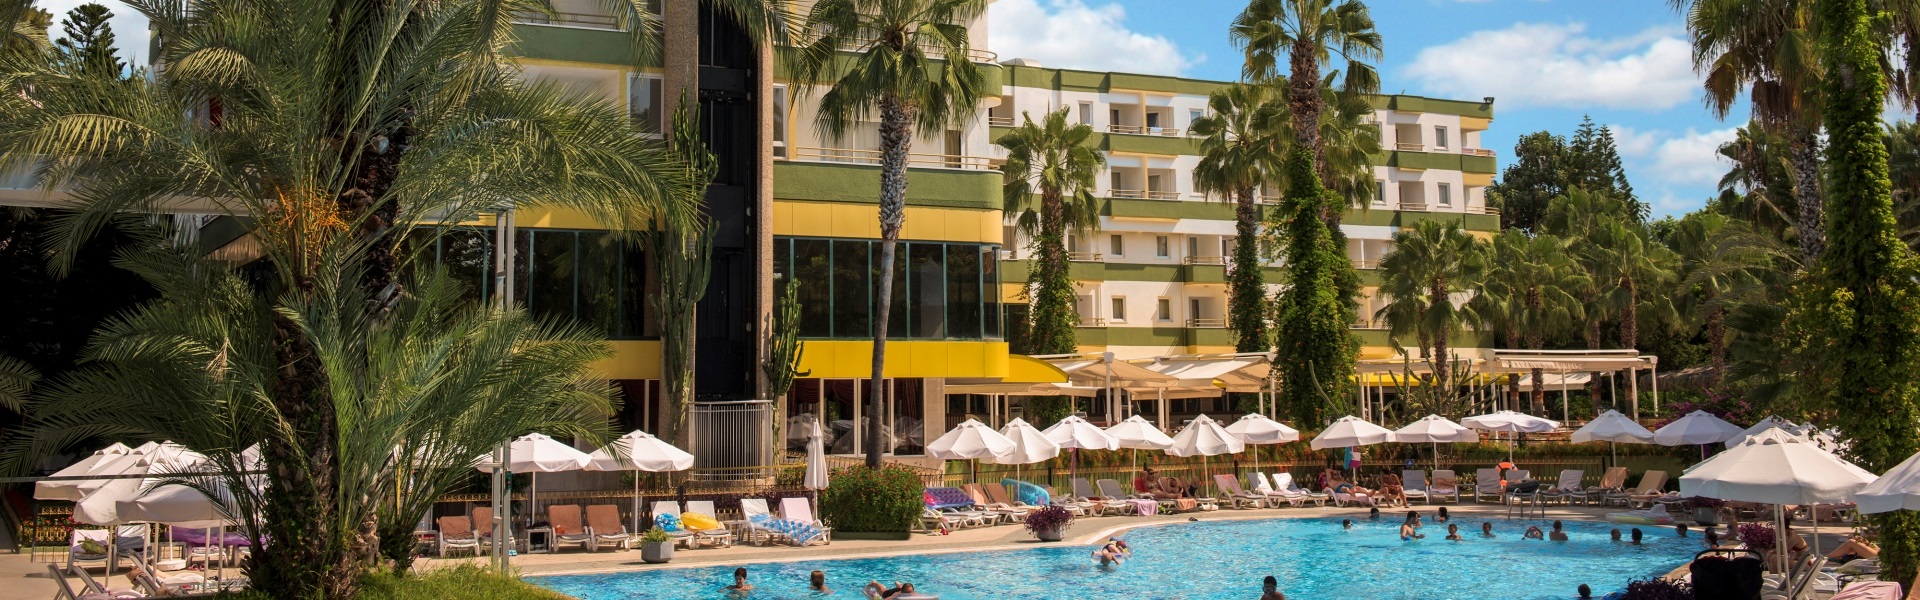 Delphin Botanik Hotel Antalya Turkey | Online Reservation